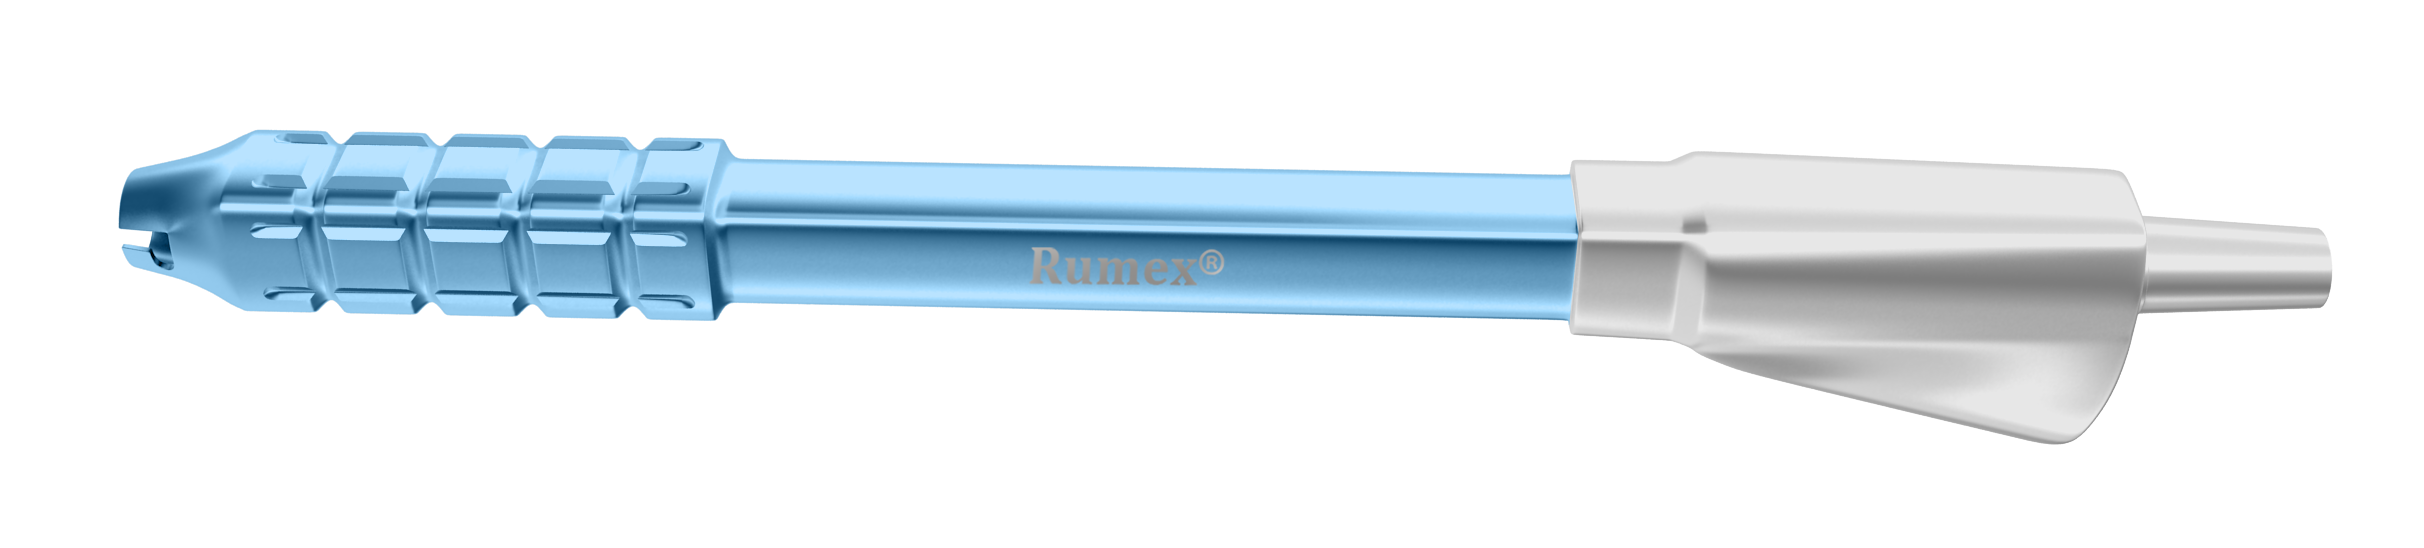 Sopema - Une remorque ergonomique pour les tuyaux d'irrigation.